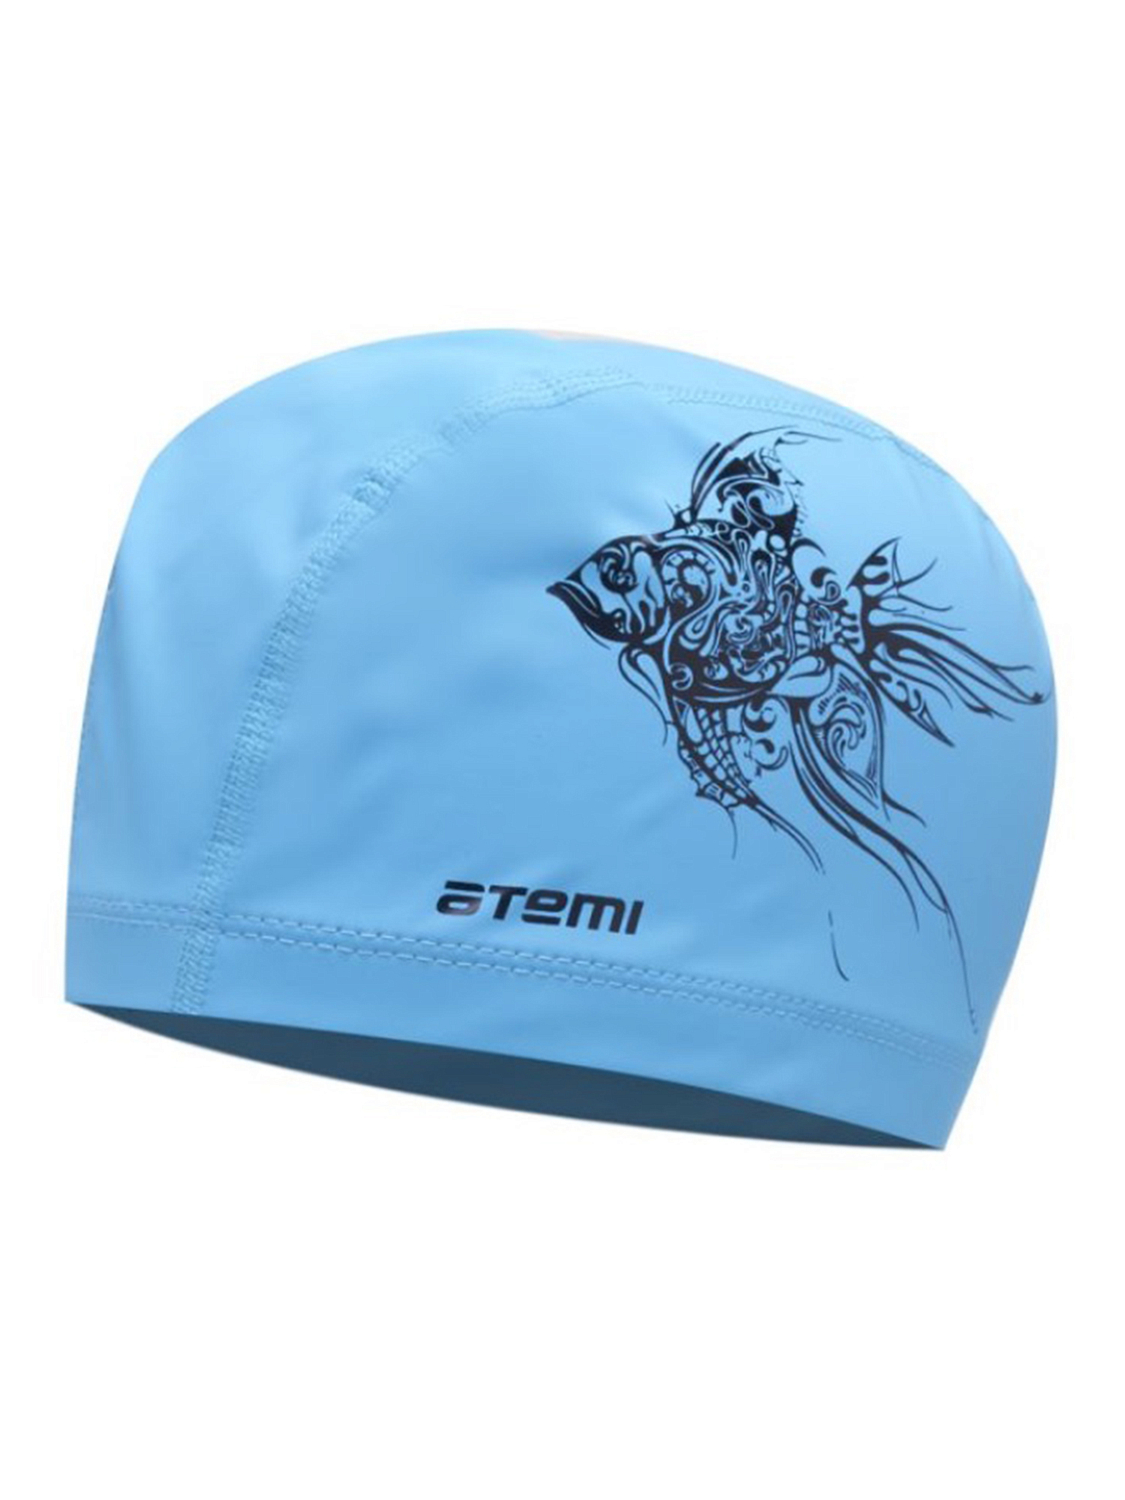 Шапочка для плавания Atemi тканевая с ПУ покрытием Голубой/Принт